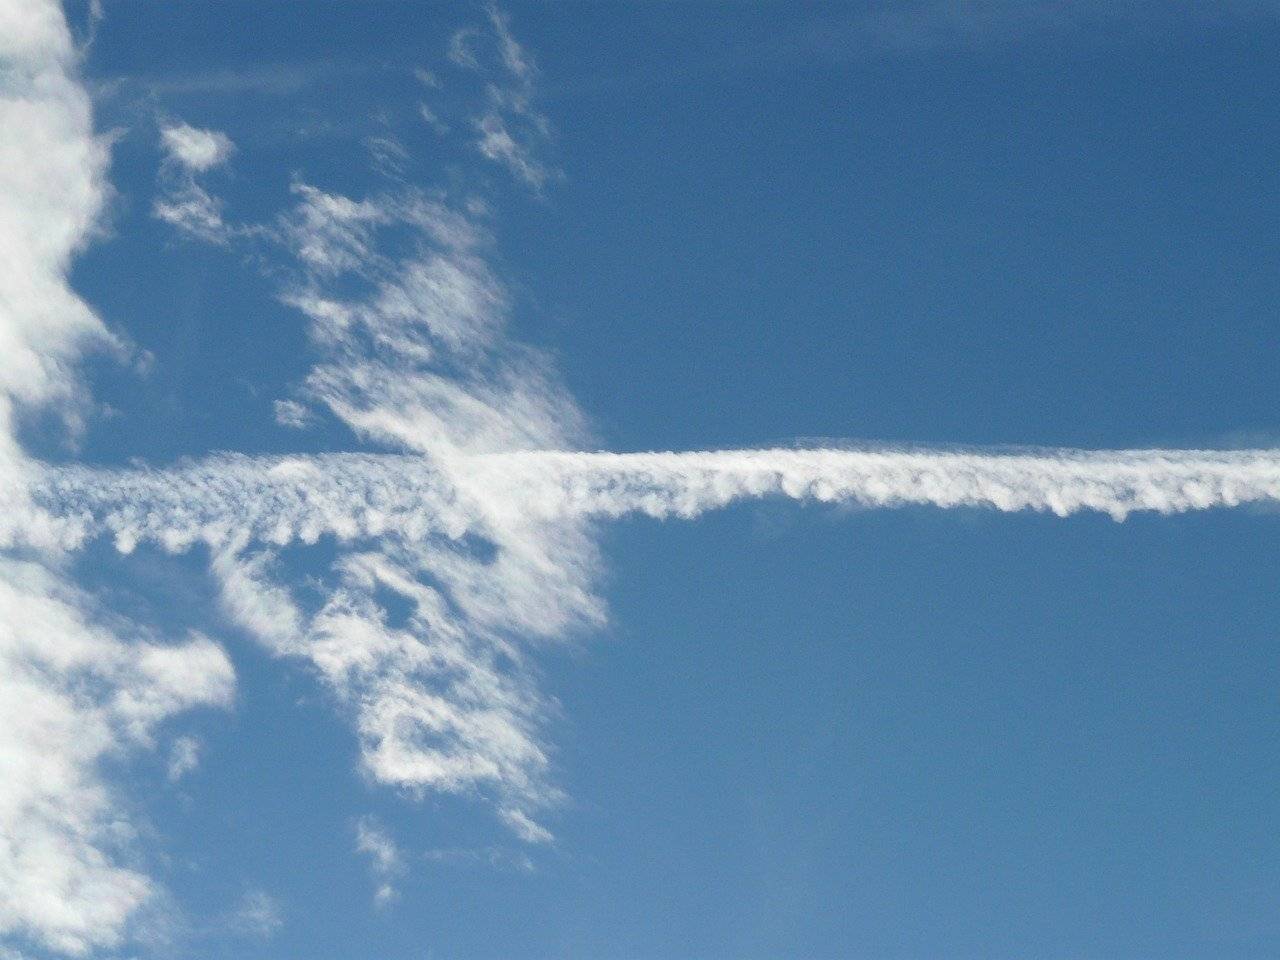 Почему самолет оставляет белый след на небе